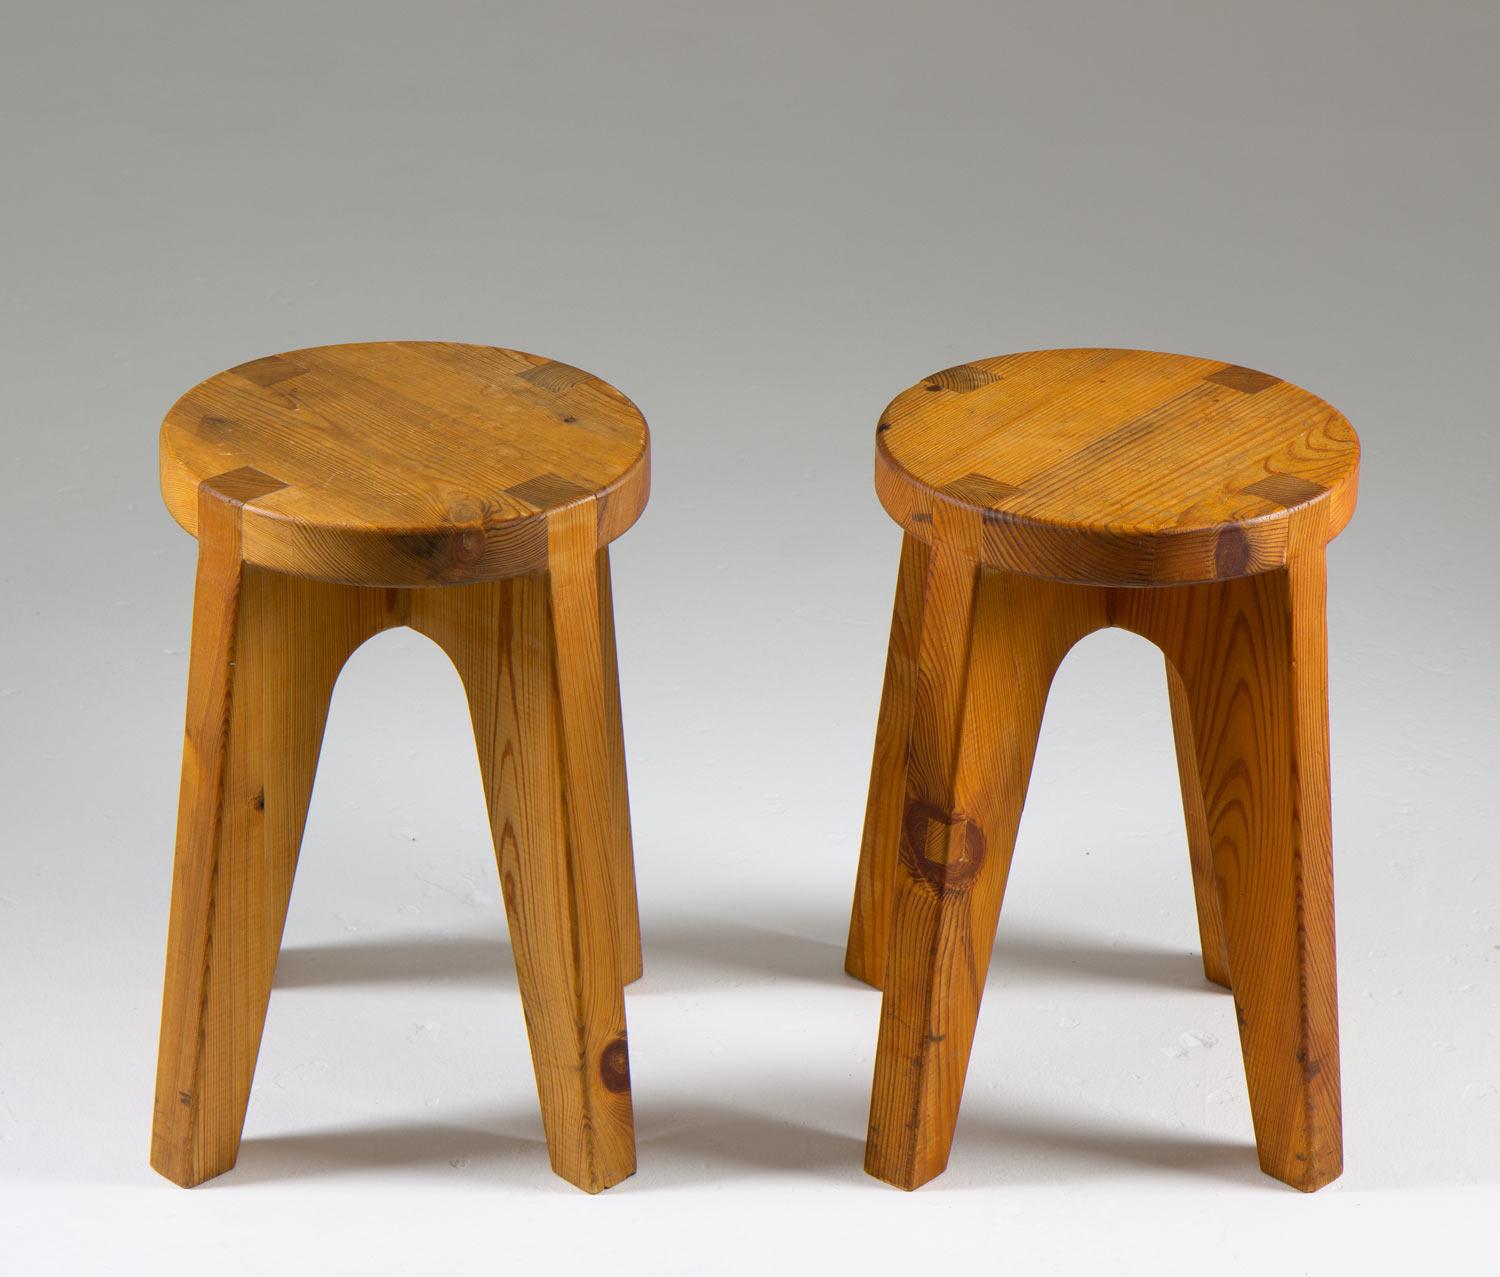 Seltene Hocker, hergestellt in Schweden, ca. 1970. 
Extrem gut gemachte Hocker, die aus einer runden Sitzfläche mit vier Beinen bestehen, die mit sichtbaren Tischlerarbeiten schön verbunden sind.

Zustand: Sehr guter Originalzustand mit schöner